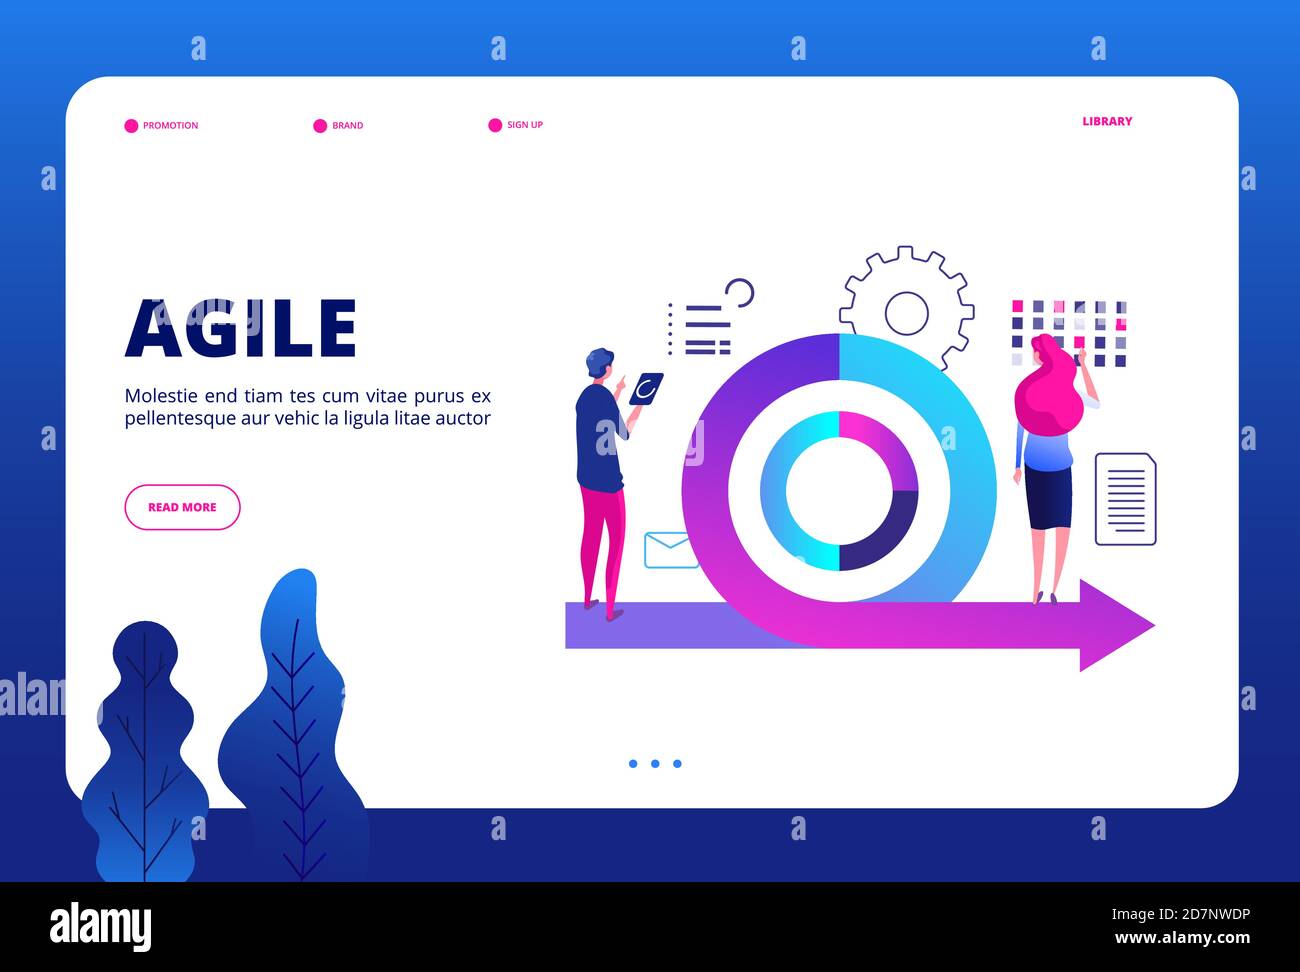 Agiles Konzept. Vector agile Management Landing Page. Geschäftstreffen, Planungsdarstellung. Agile Teamarbeit Methode, Entwicklung schematisch Stock Vektor